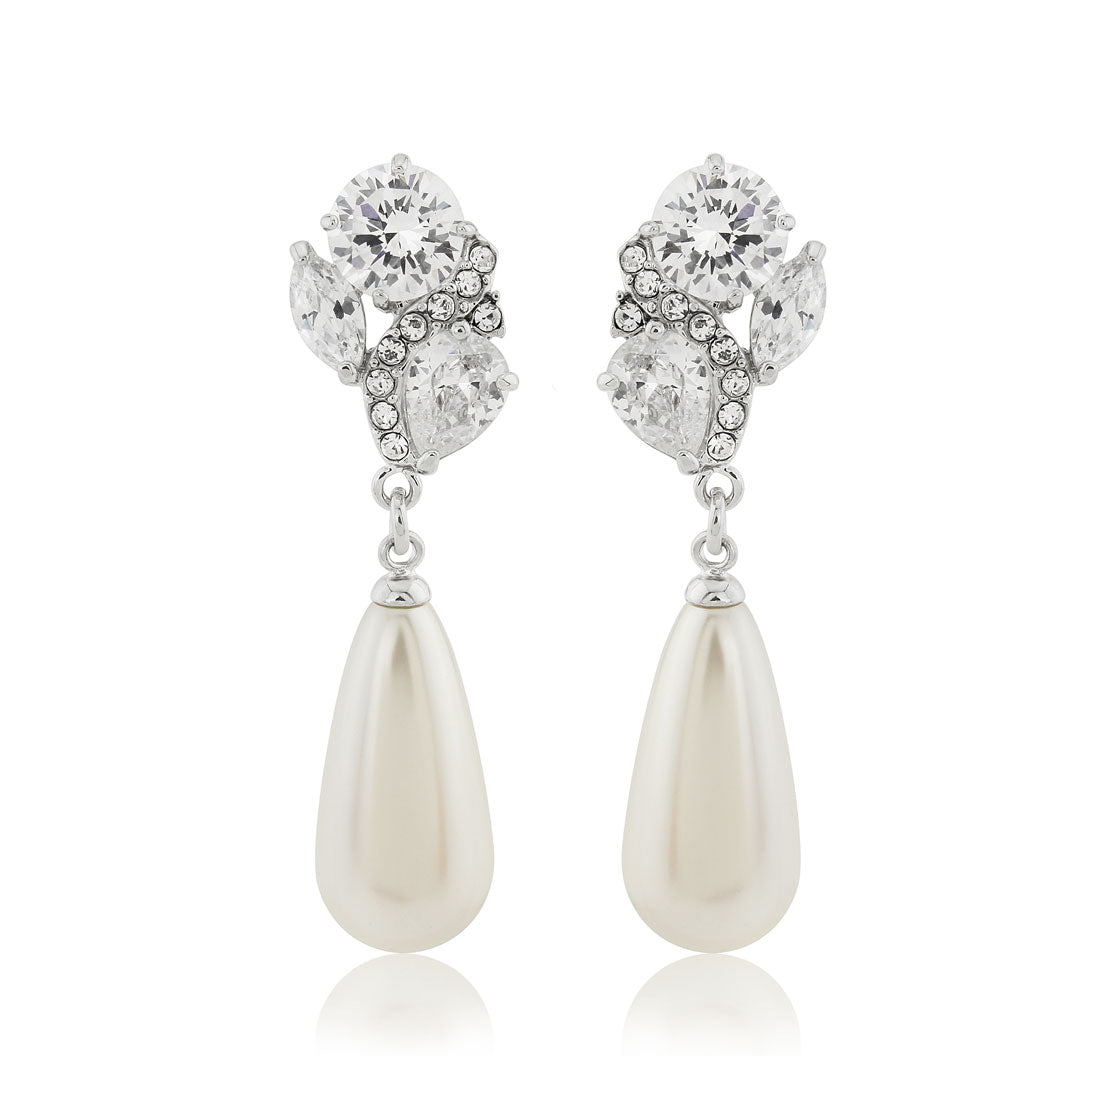 Elegance of Pearl & Crystal Drop Wedding Clip On Earrings